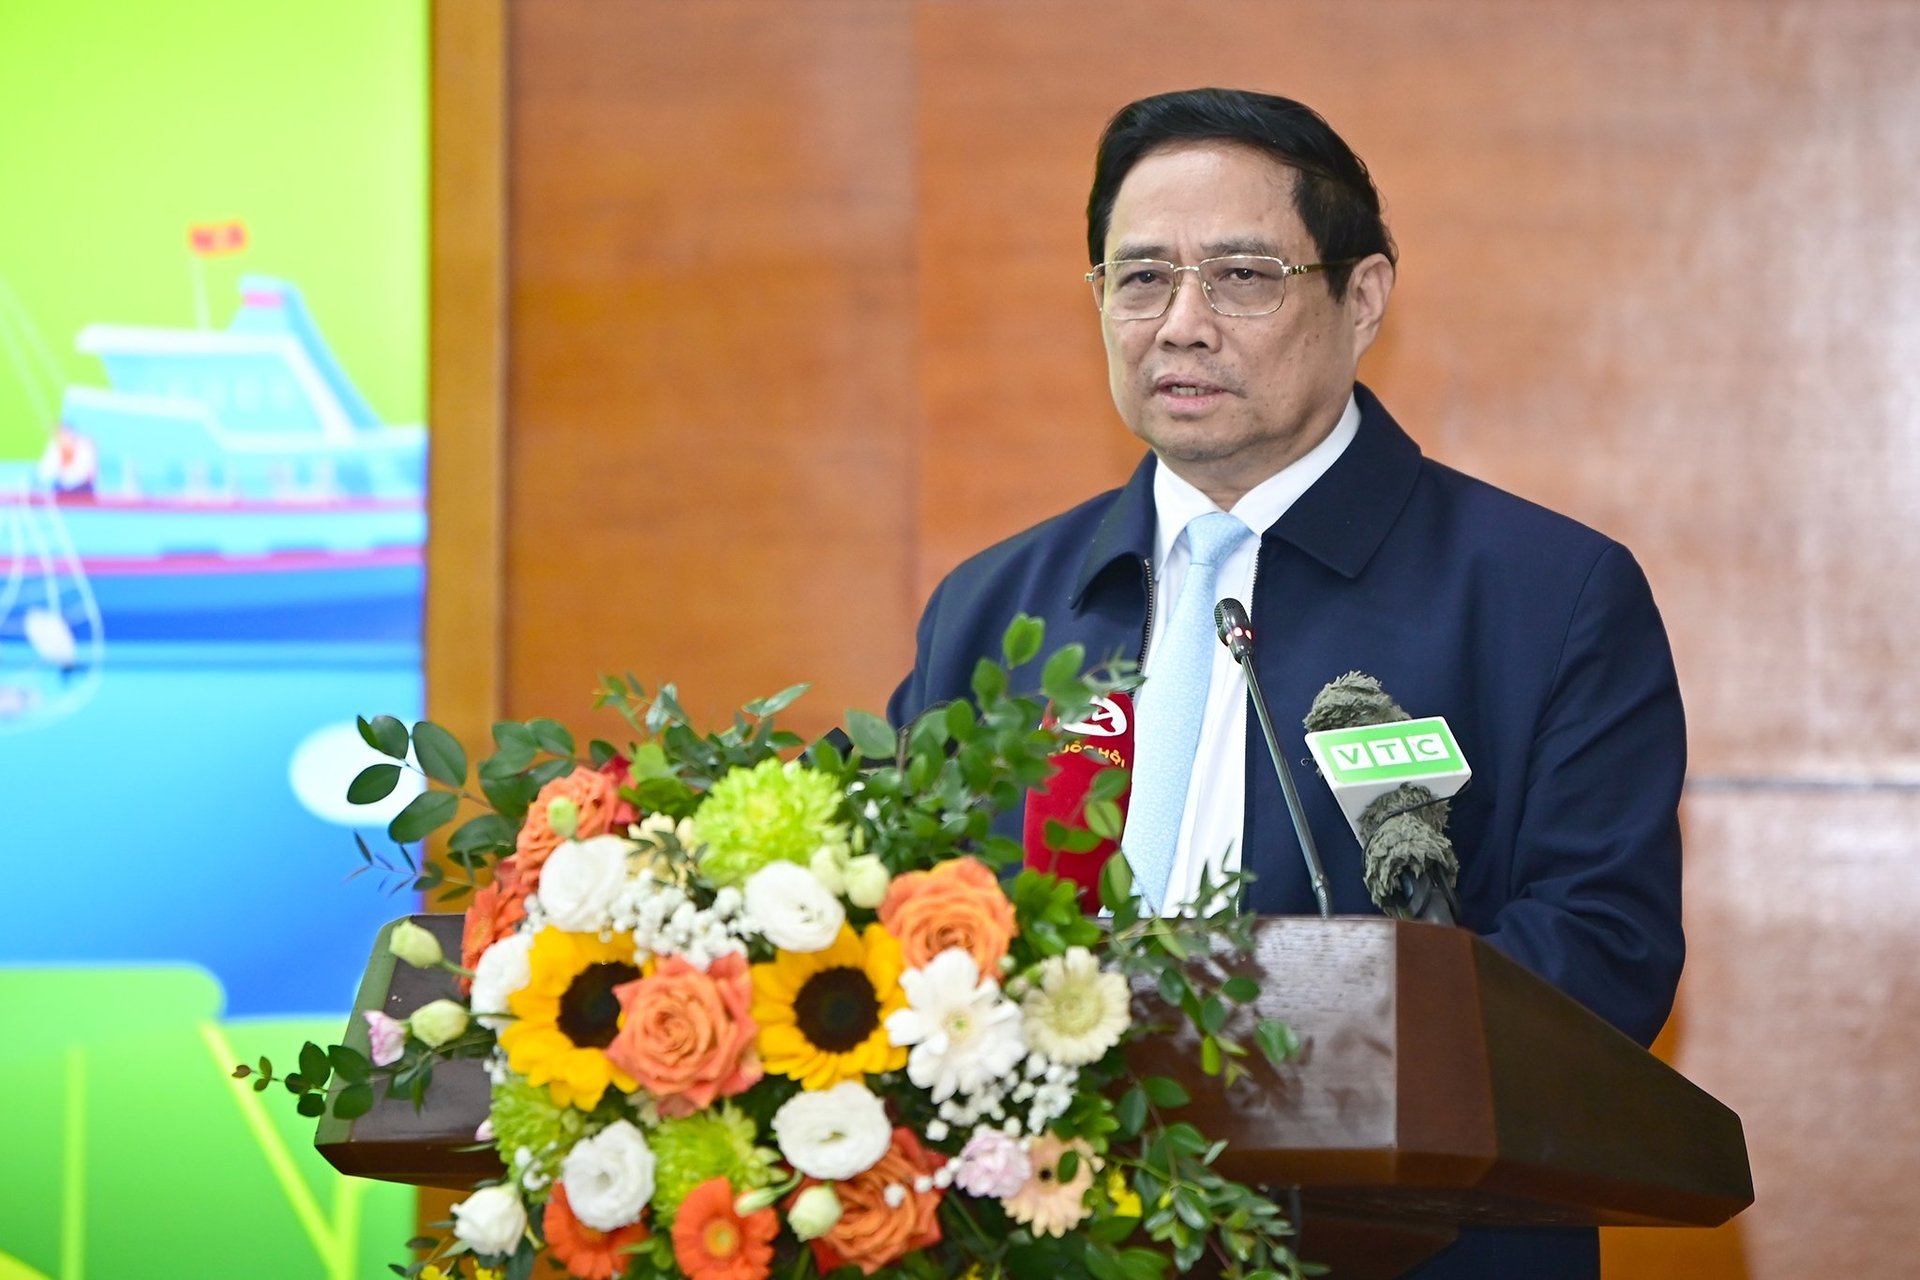 Bộ trưởng Bộ Ngoại giao Bùi Thanh Sơn: Thế giới bày tỏ ngưỡng mộ với những gì Việt Nam làm được trong nông nghiệp- Ảnh 2.